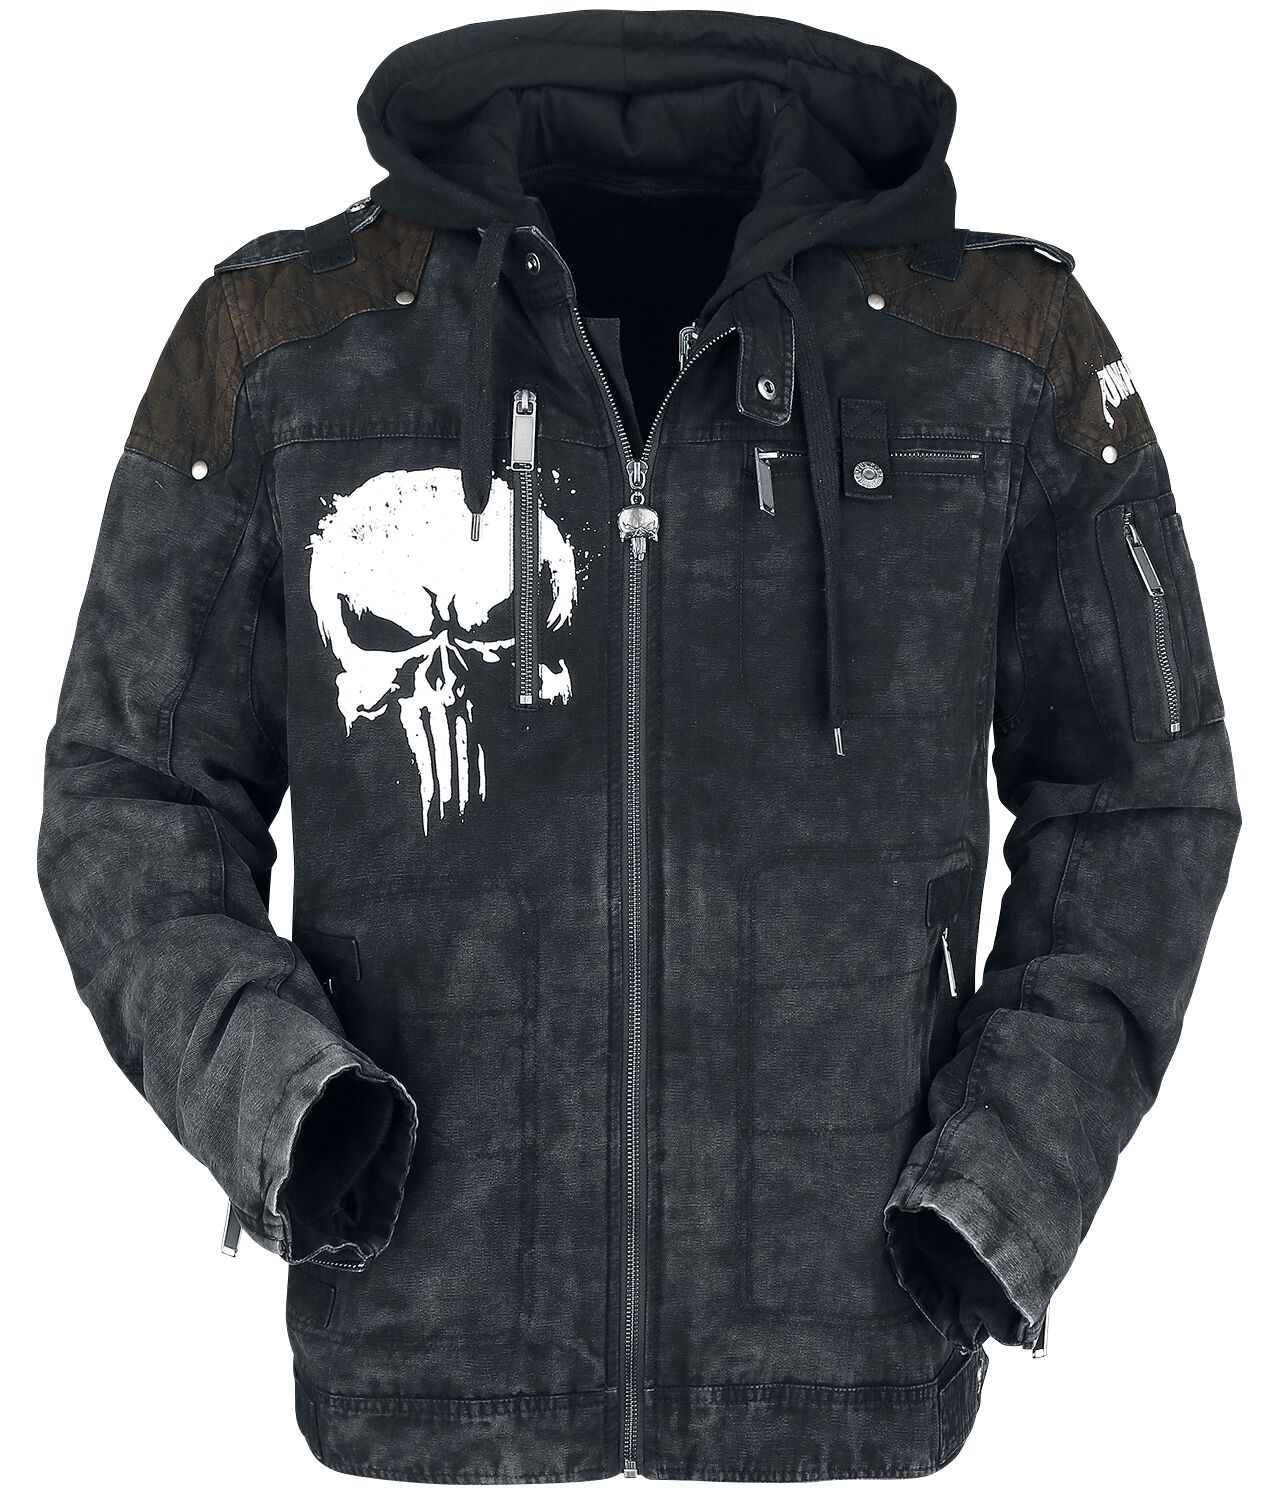 The Punisher - Marvel Winterjacke - Skull - S bis XXL - für Männer - Größe M - schwarz  - EMP exklusives Merchandise!